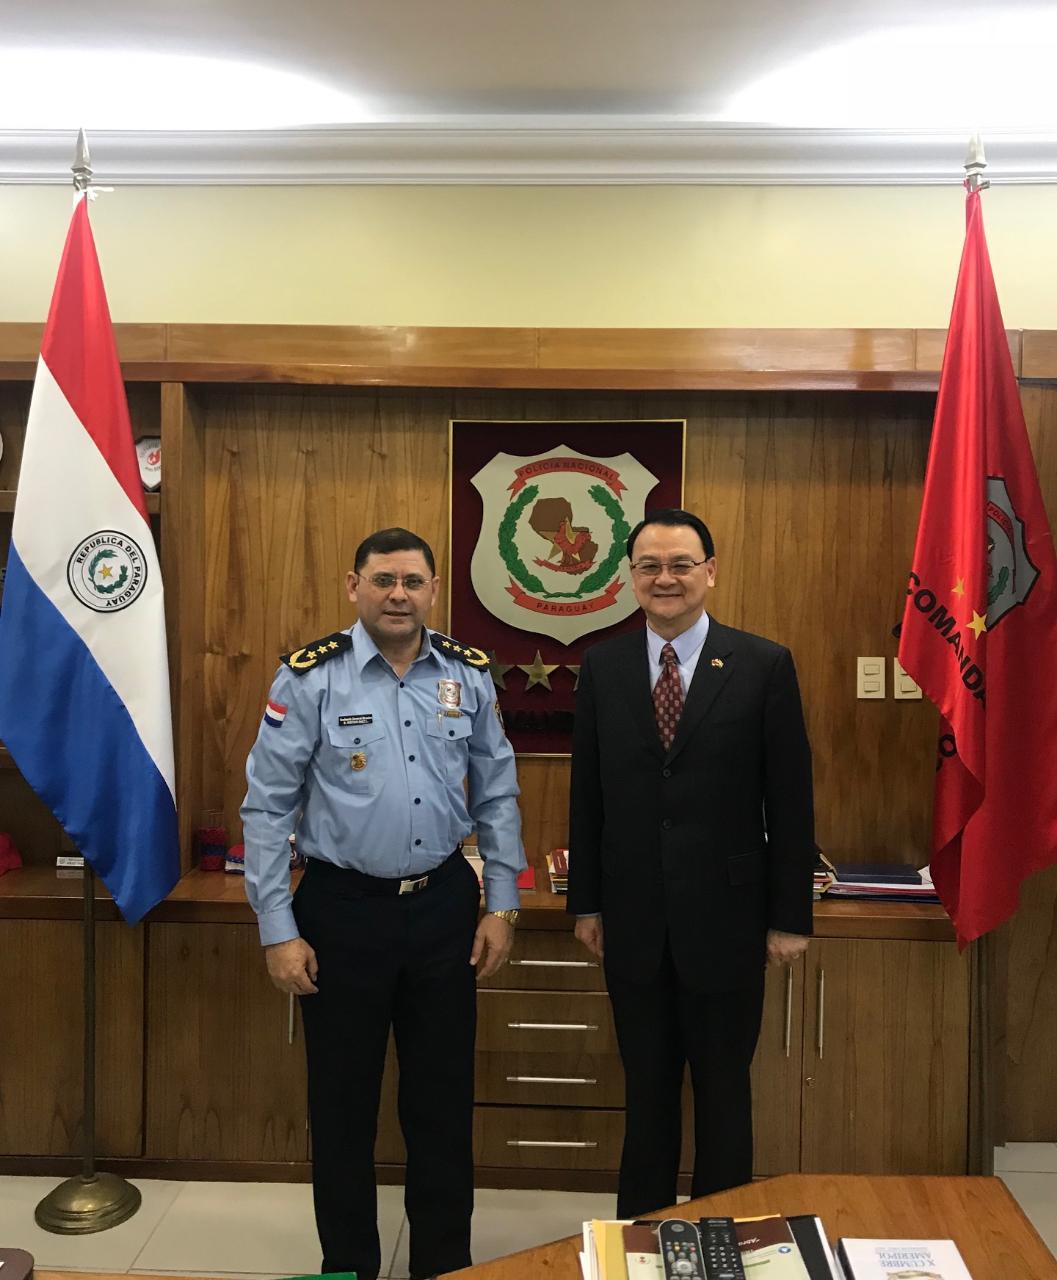 El Embajador de la República de China (Taiwán), Dr. Diego L. Chou, visitó al Comandante de la Policía Nacional, Comisario General Director Bartolomé Báez el día 5 de septiembre, 2018.